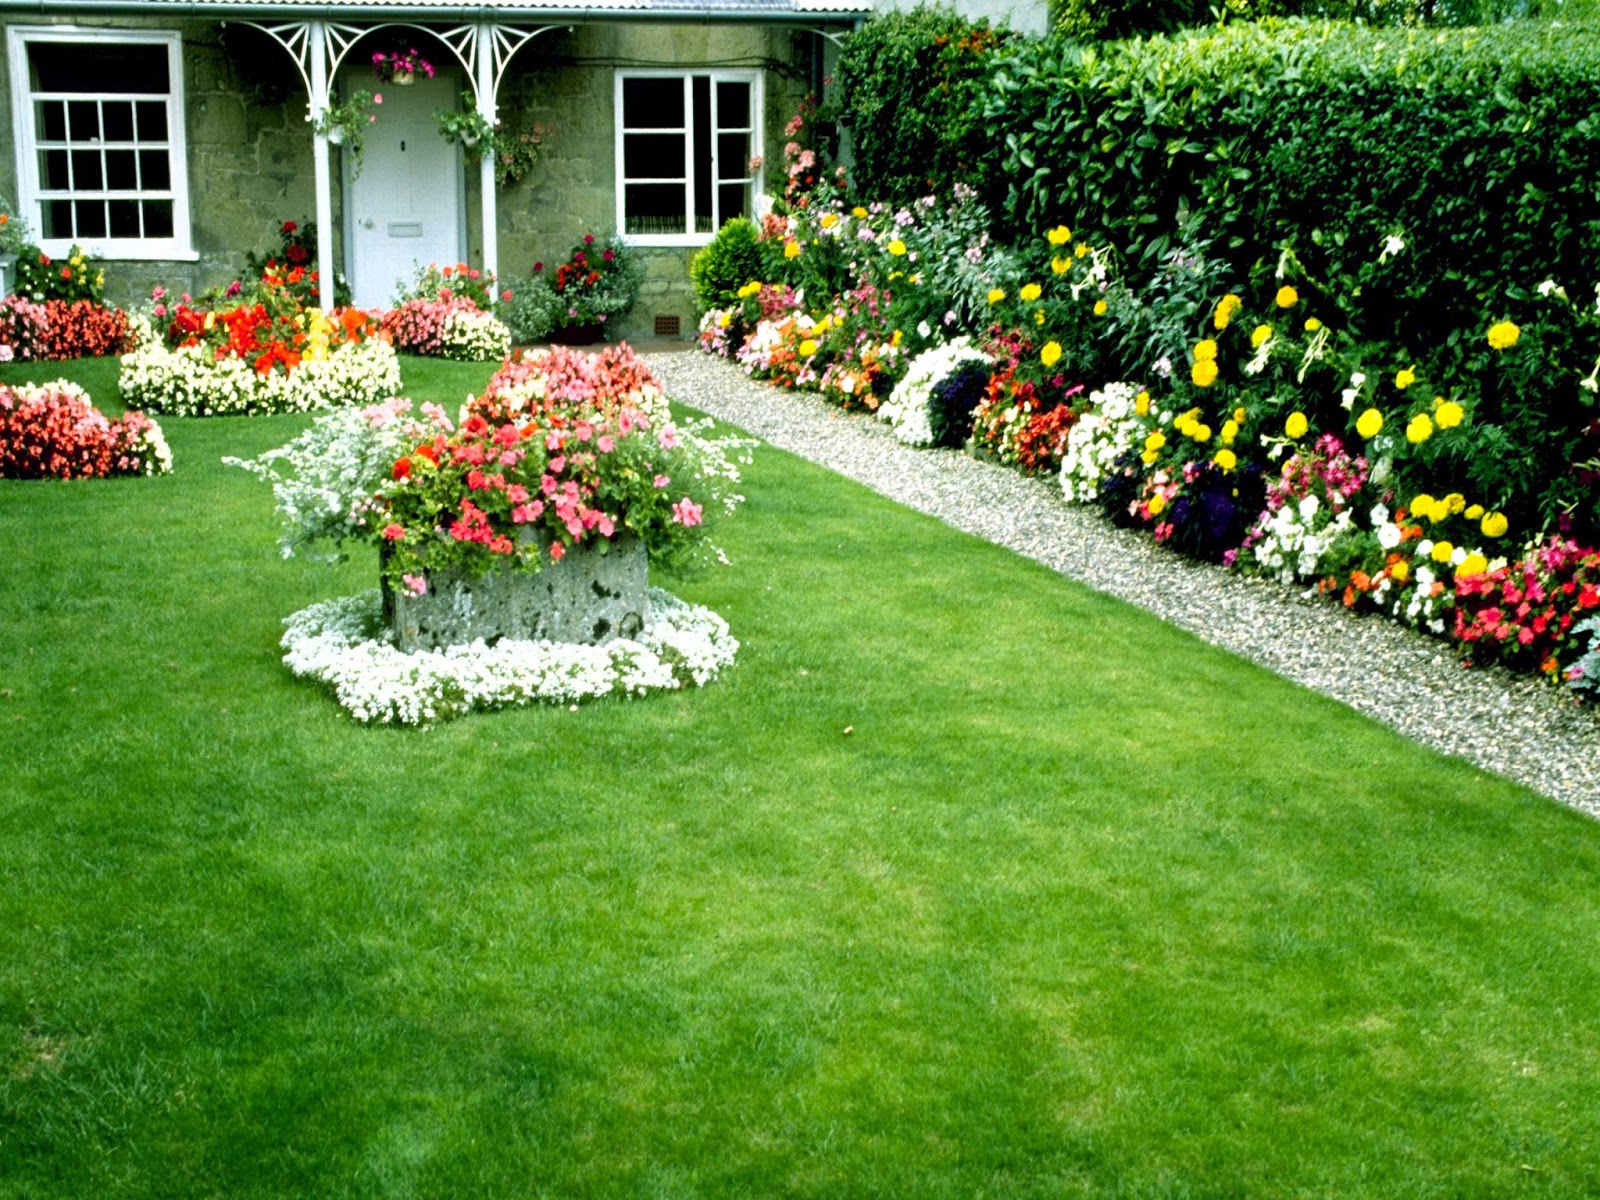 wallpaper nature flowers,lawn,garden,grass,yard,plant